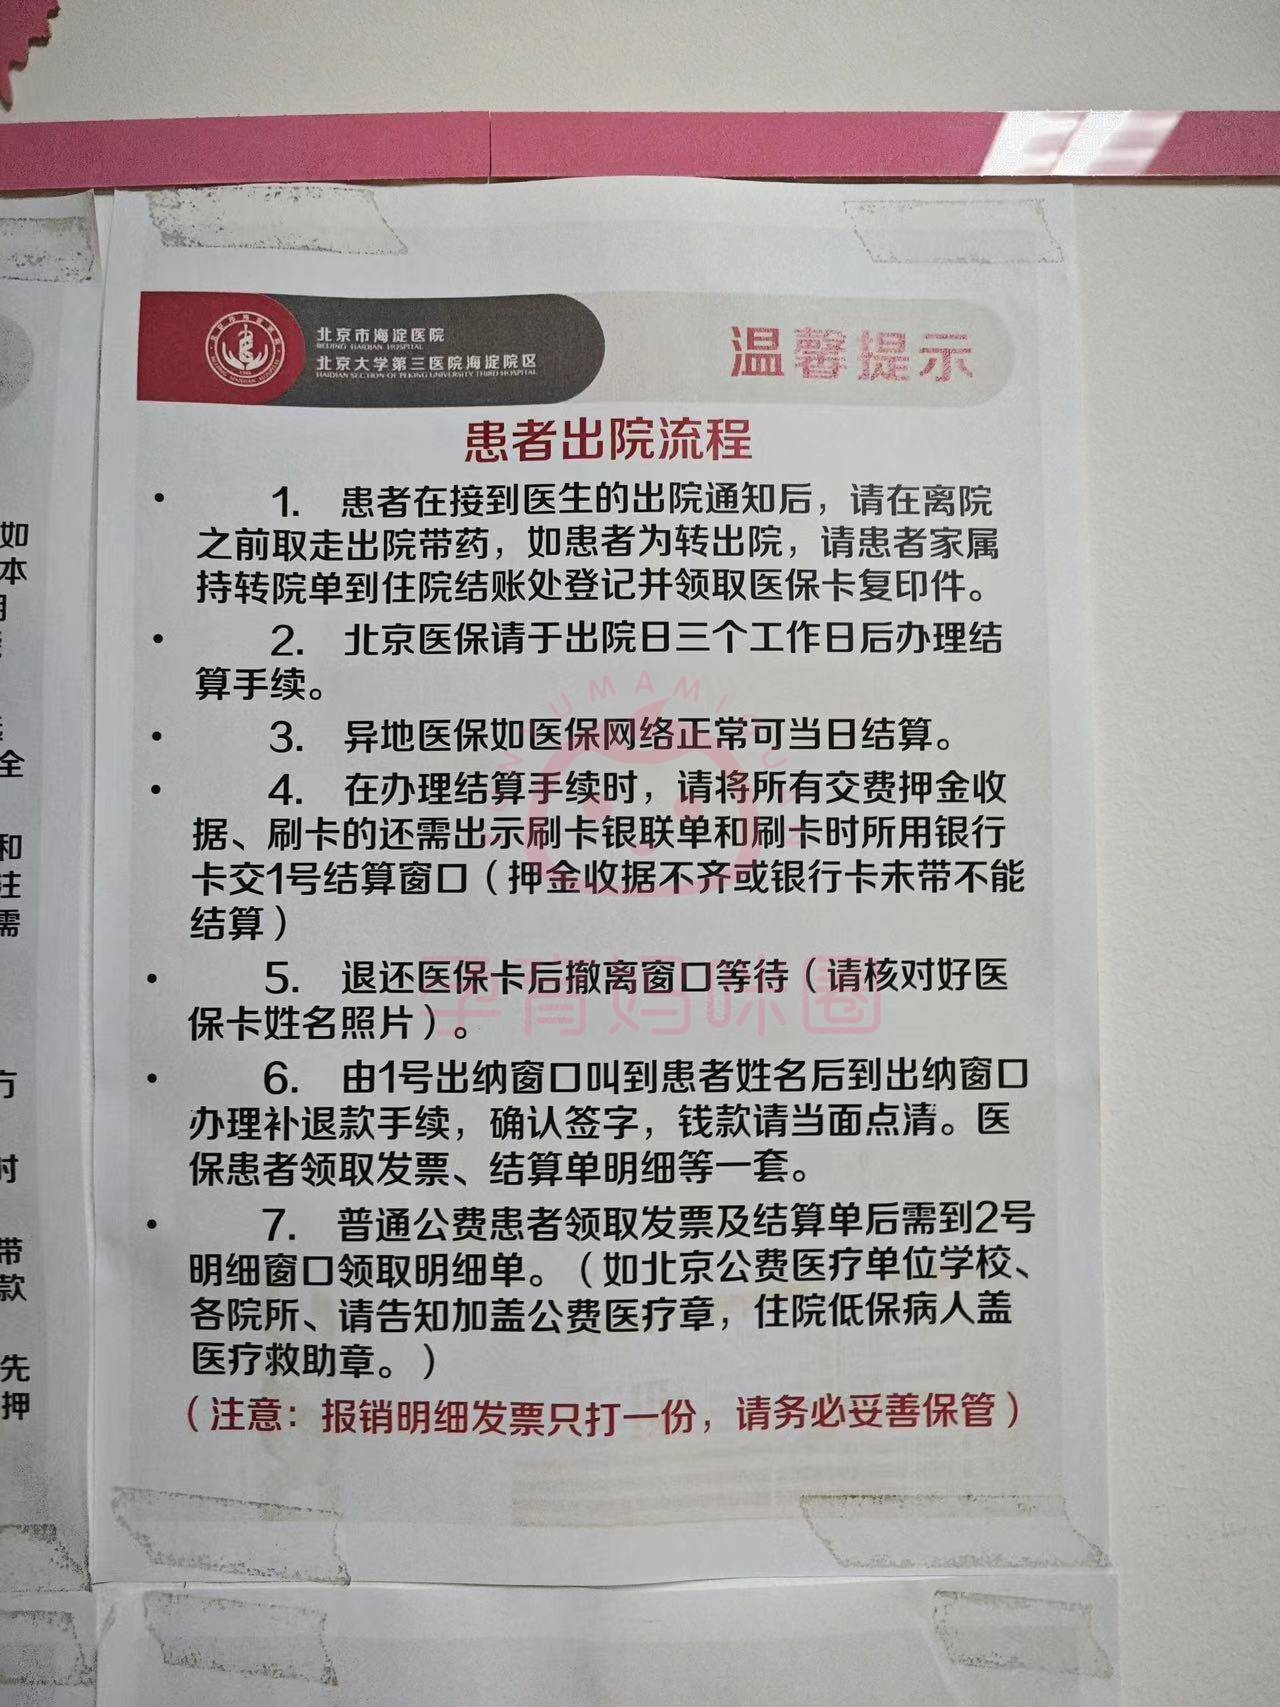 包含北京市海淀医院号贩子过来人教你哪里有号!的词条